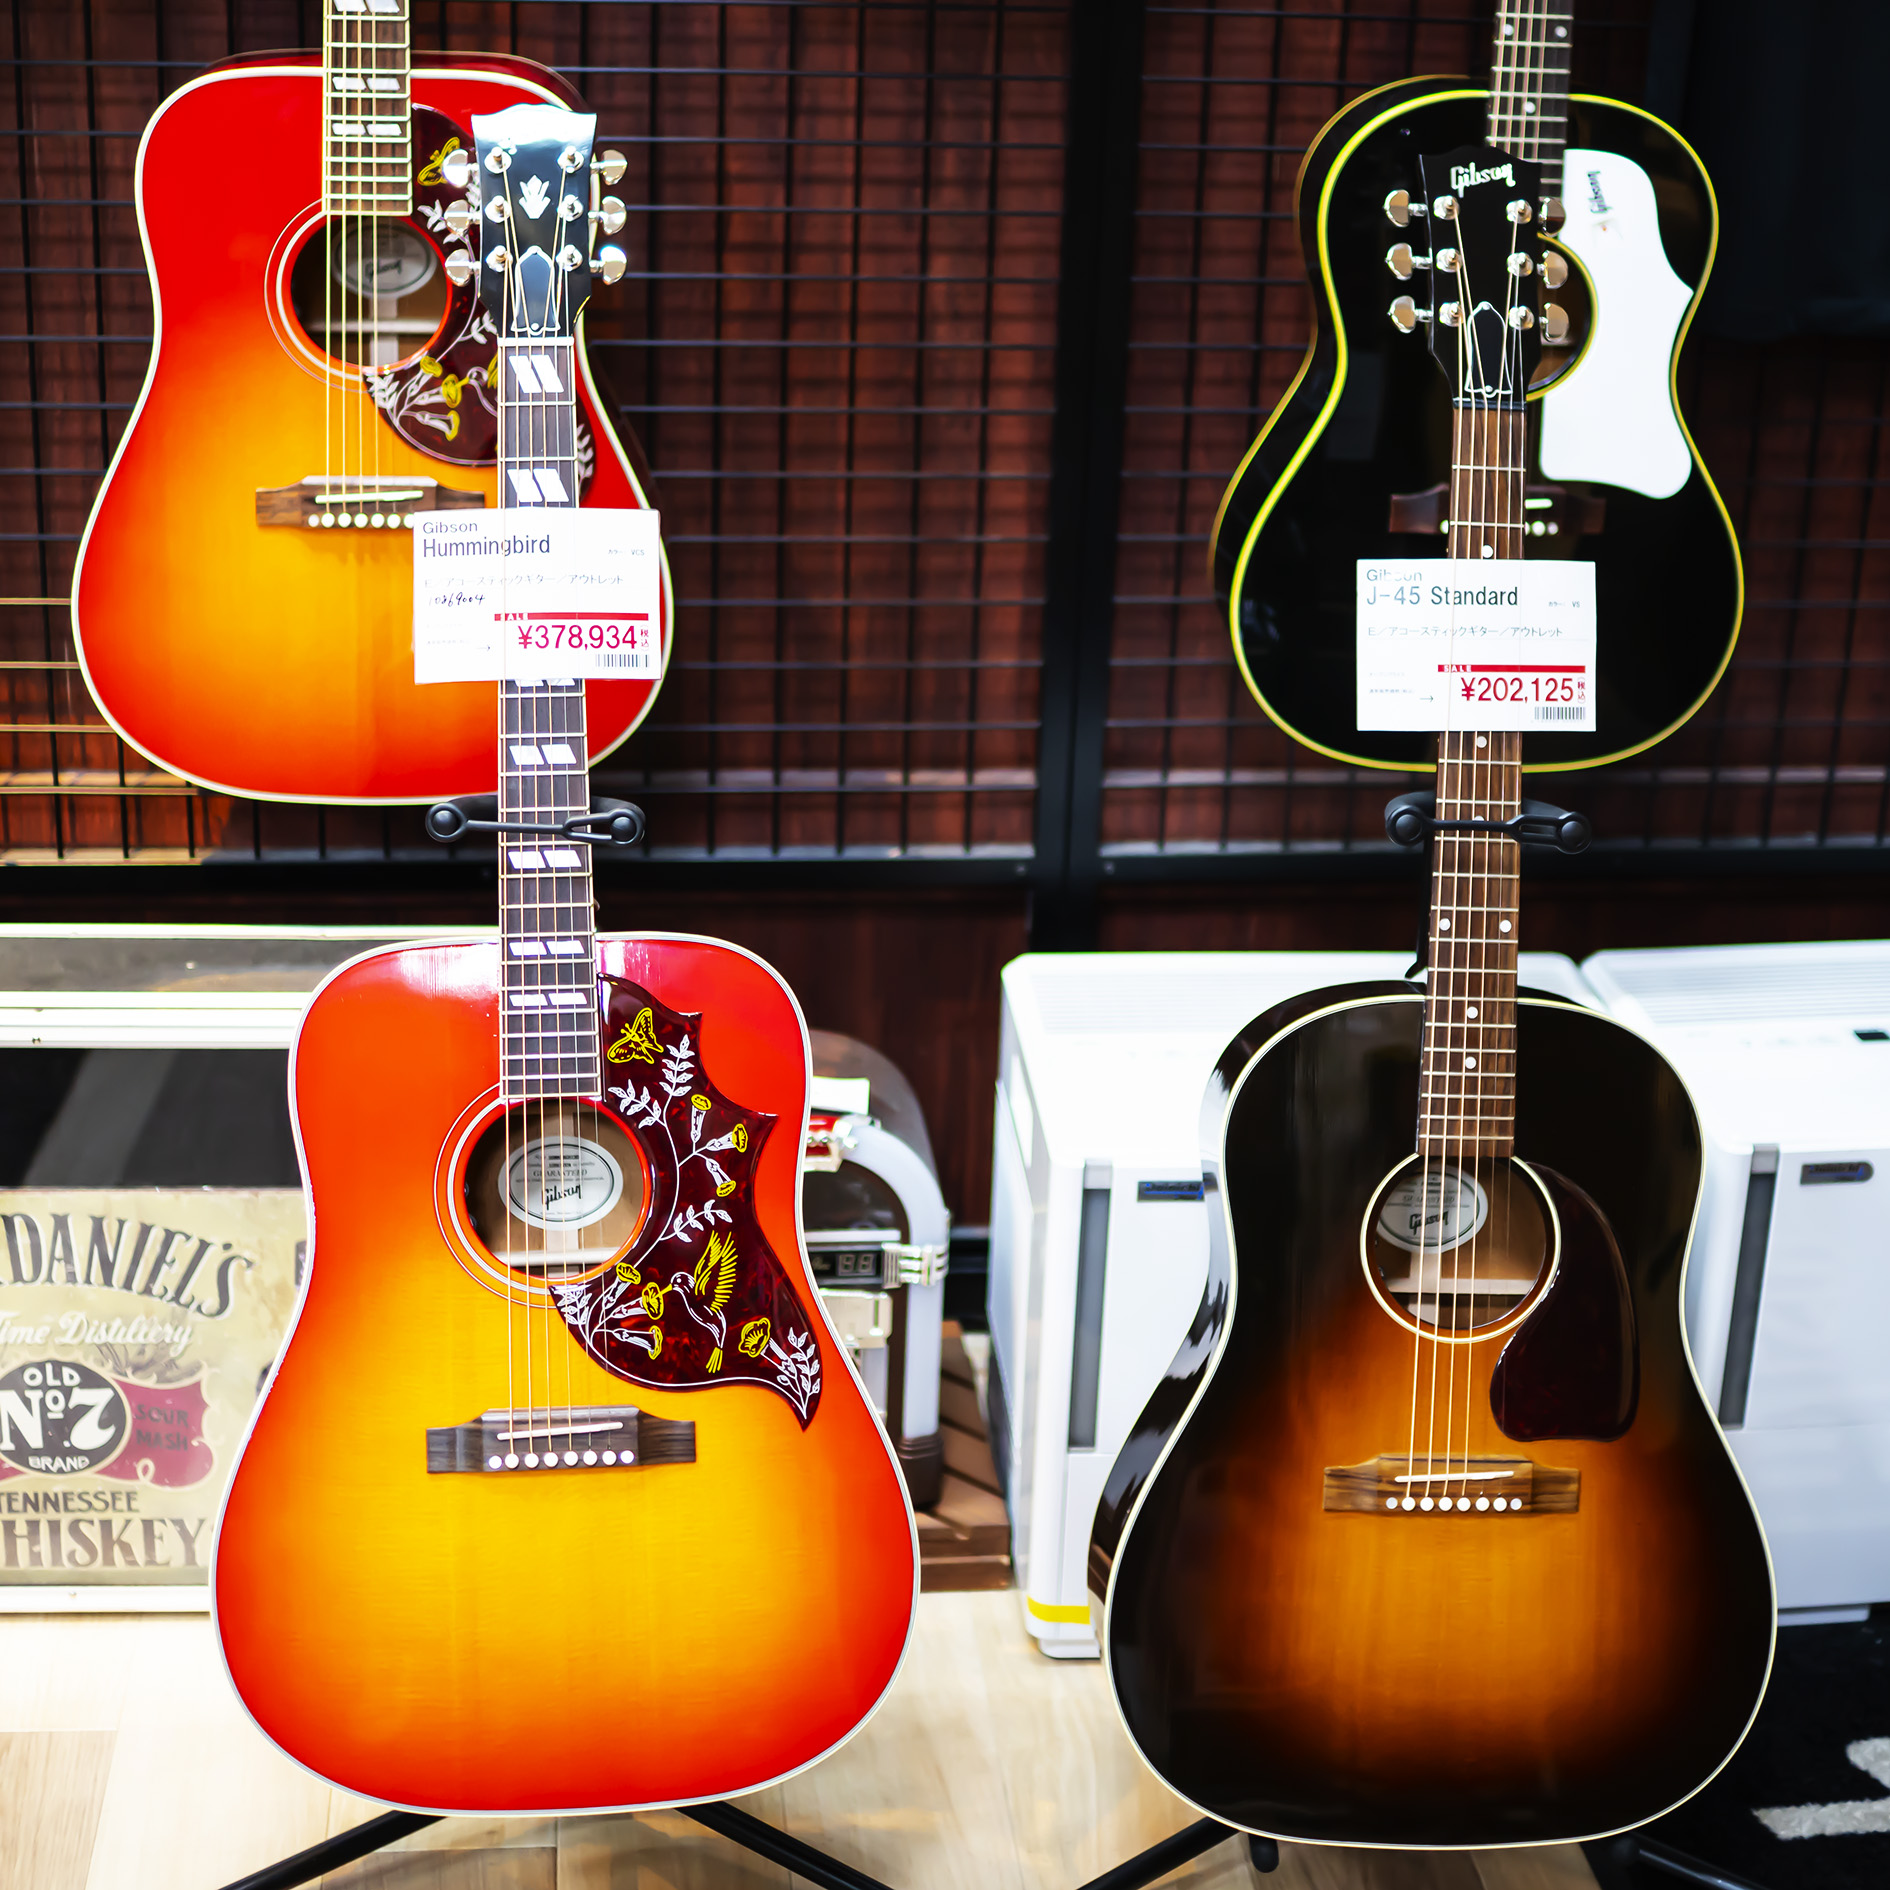 *J-45 Standard 1942年に誕生して以降、世界中で愛されてきたギブソン・アコースティックギターを代表する「J-45」の2019年モデル。ギブソン独自のボディ形状である「ラウンドショルダー」と「スプルーストップ&マホガニーバック」の組み合わせから奏でられるレンジが広くダイナミックなサウン […]